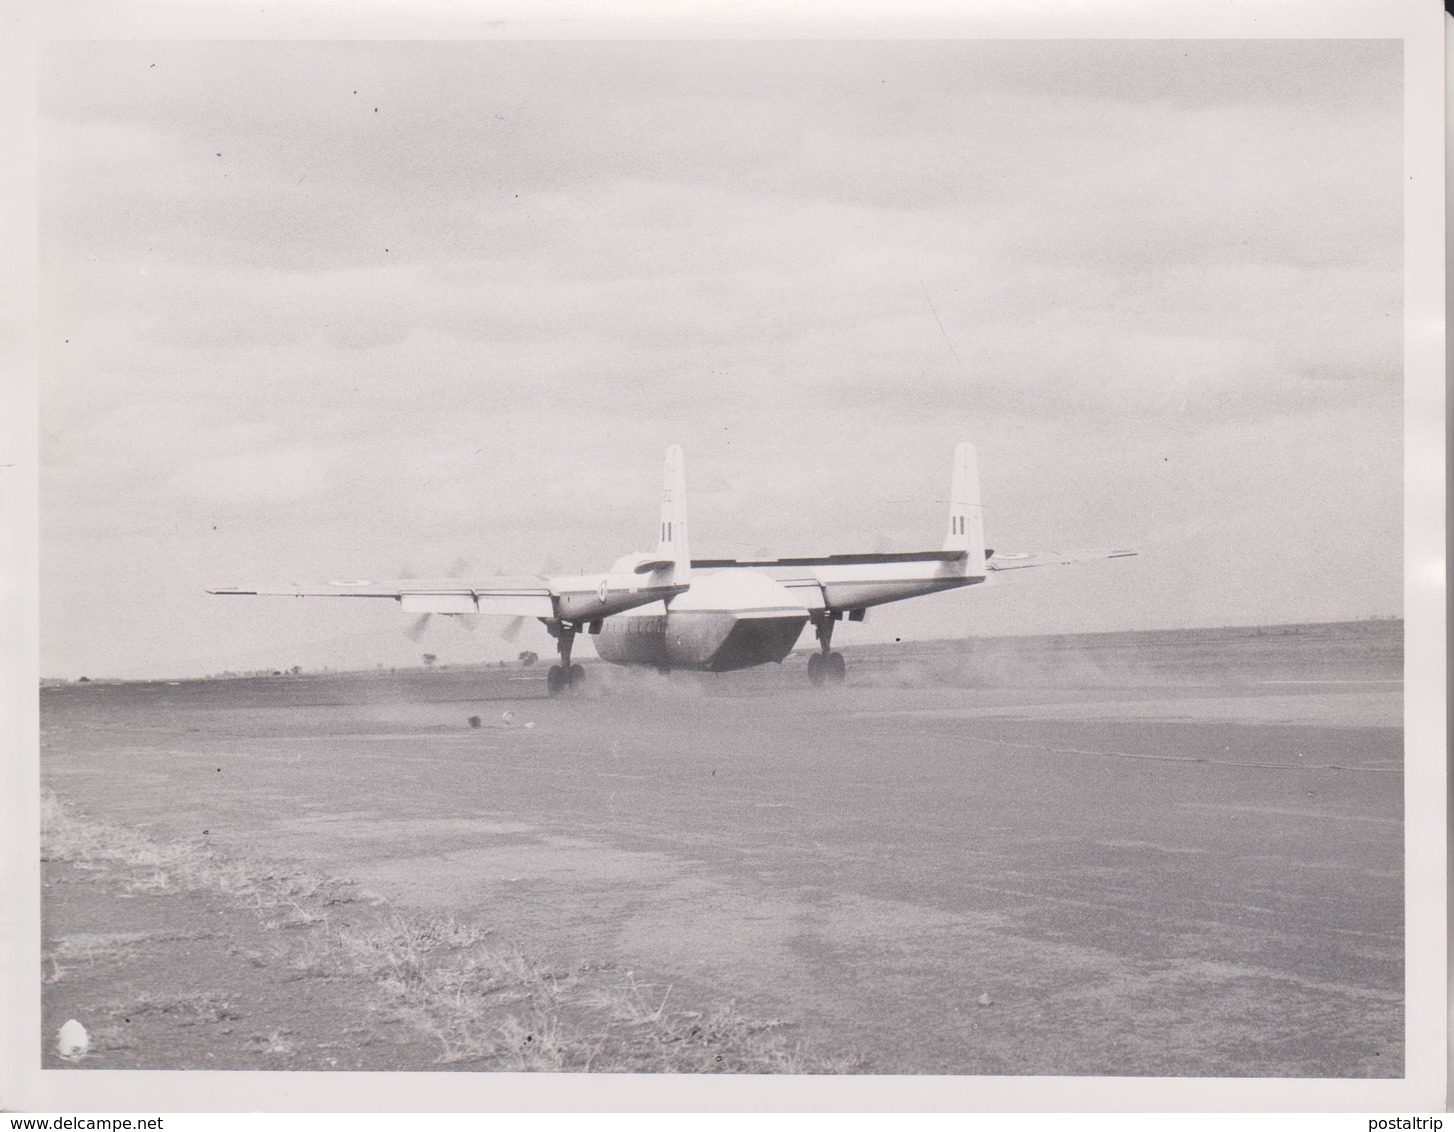 AW C1 Armstrong Whitworth Argosy ROYAL AIR FORCE  KHORMAKSAR ADEN MIDDLE EAST AFRICA NAIROBI     21 * 16 CM  AEROPLANE - Aviación